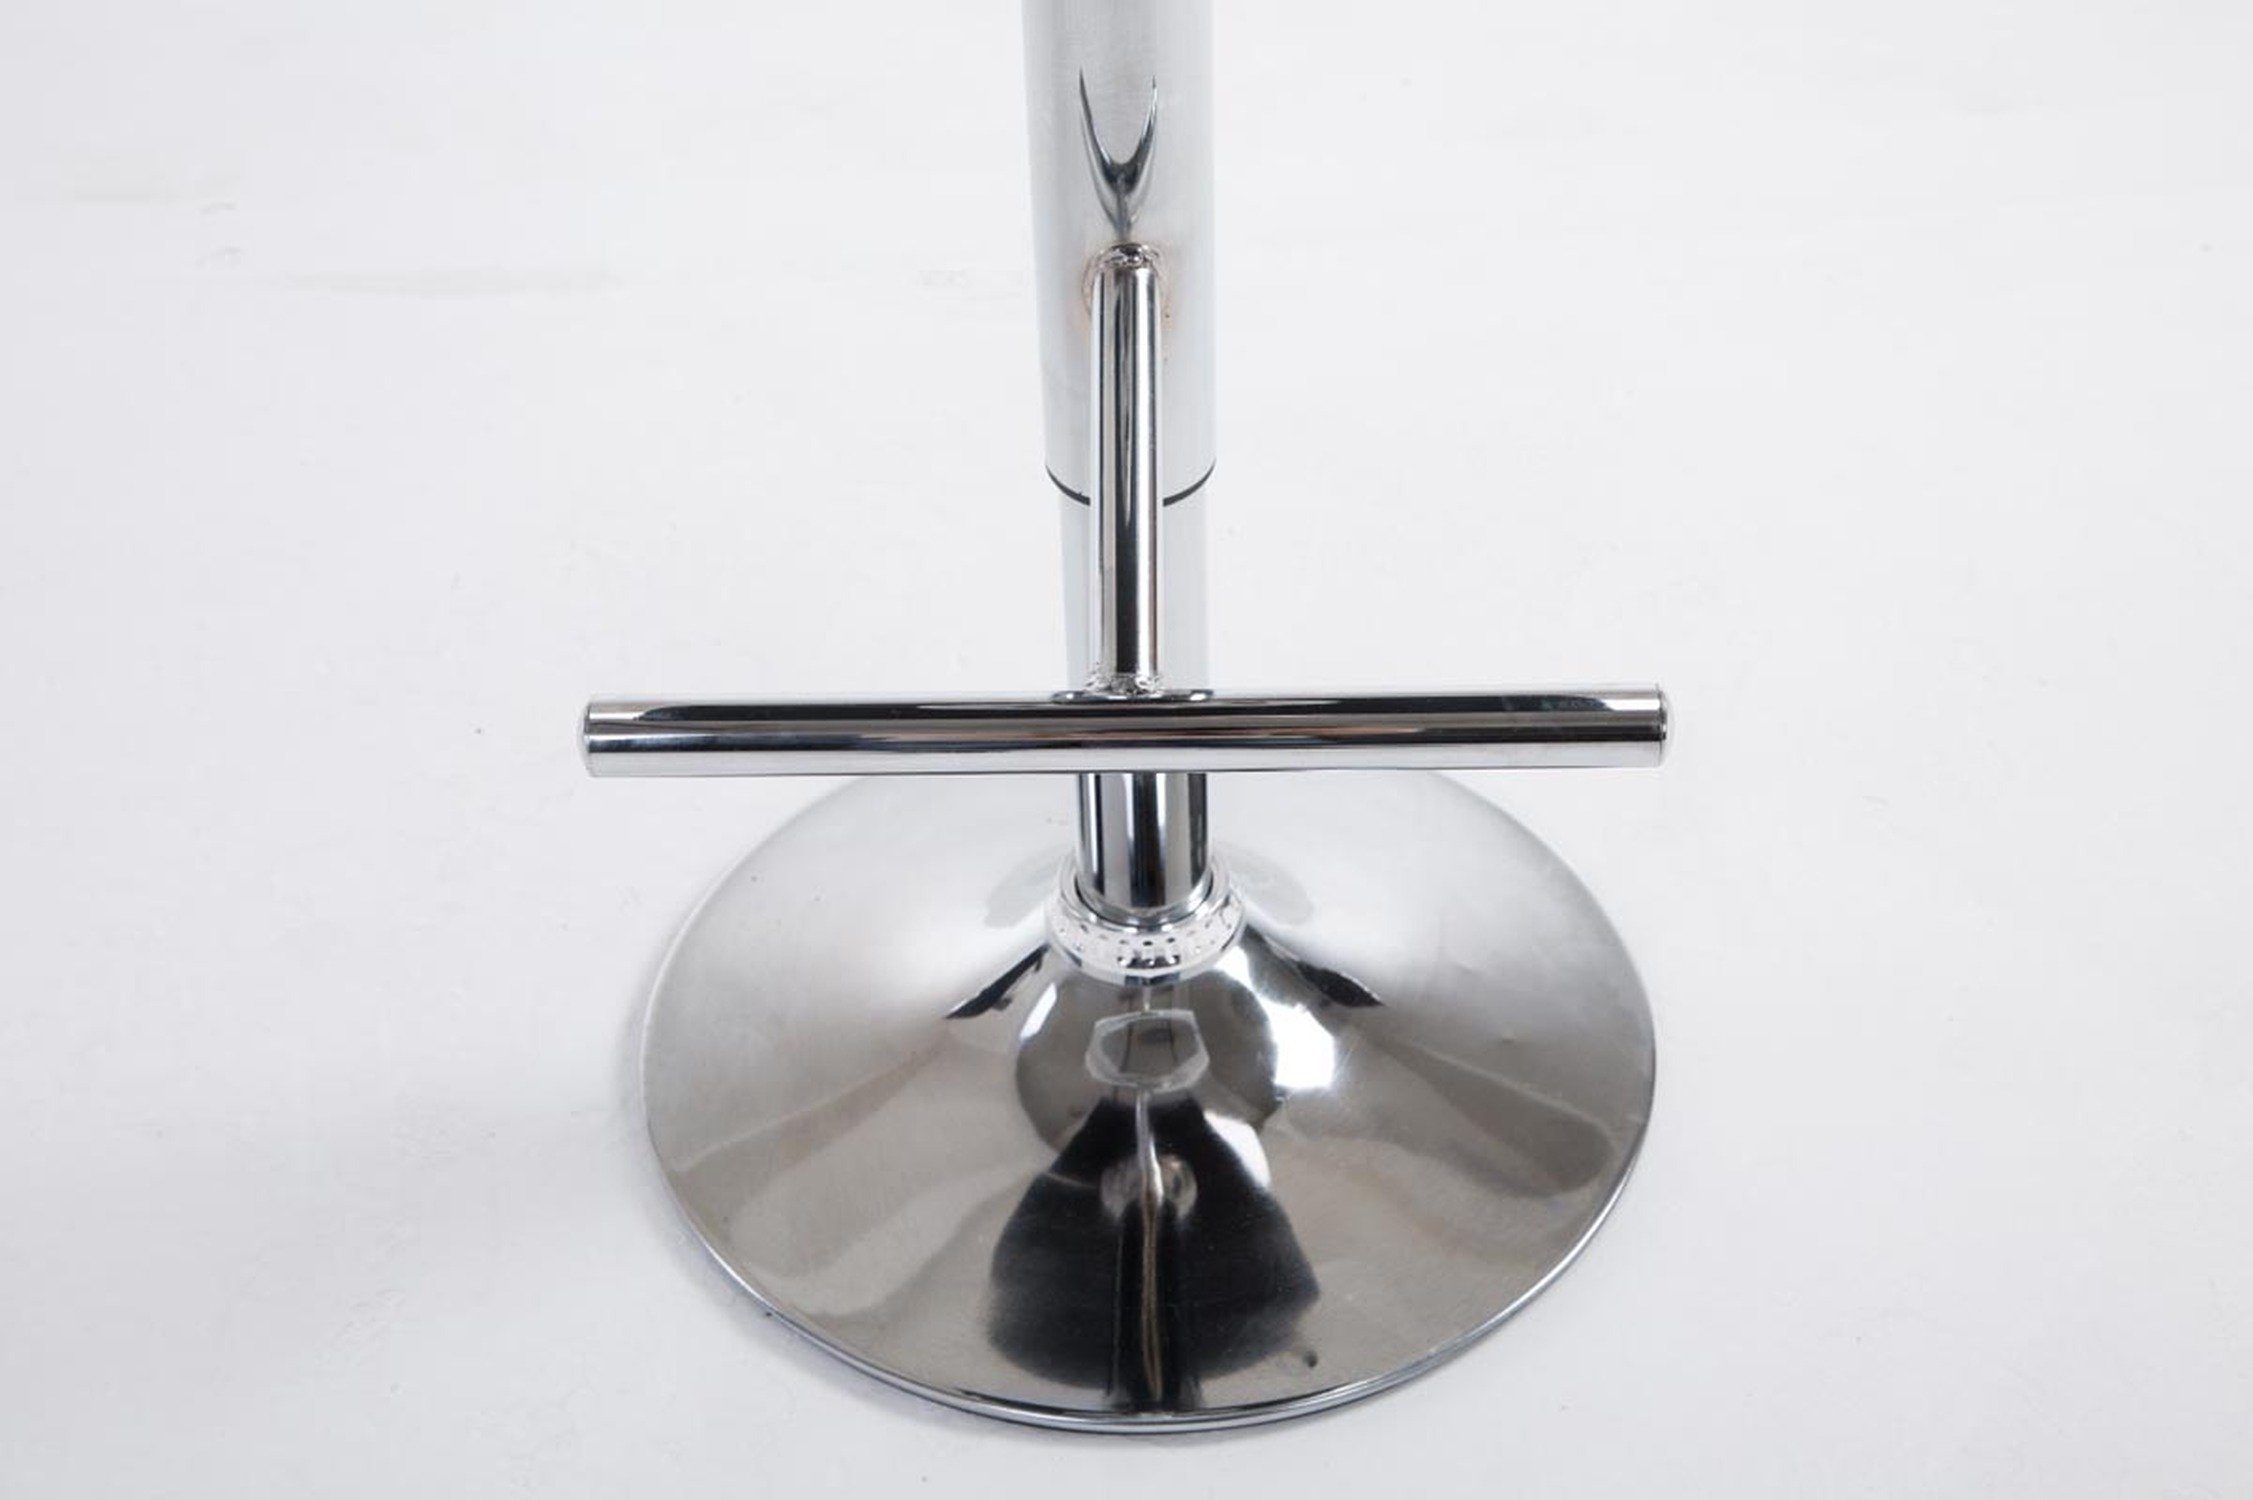 & (Barstuhl Schwarz - Tresenhocker), Küche höhenverstellbar für drehbar chromfarbener Hocker Sitzfläche: Kunstleder - Theke Calif Barhocker - Stahl TPFLiving - 360°